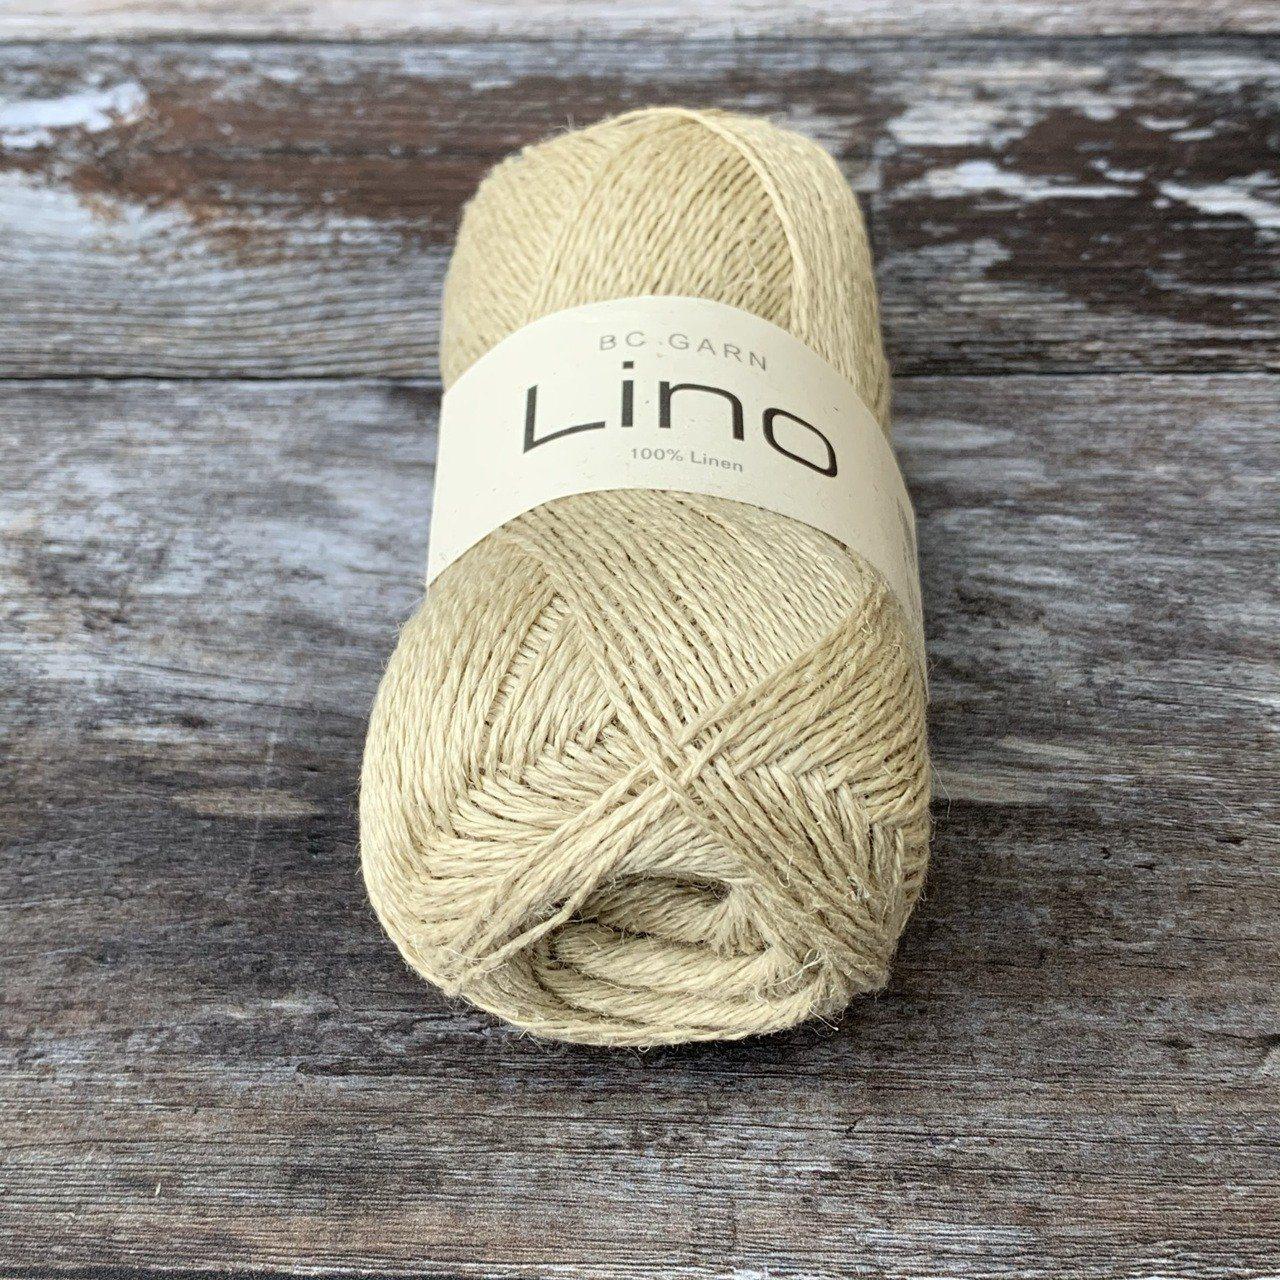 BC Garn BC Garn Lino - Natural Beige (33) - 4ply Knitting Yarn